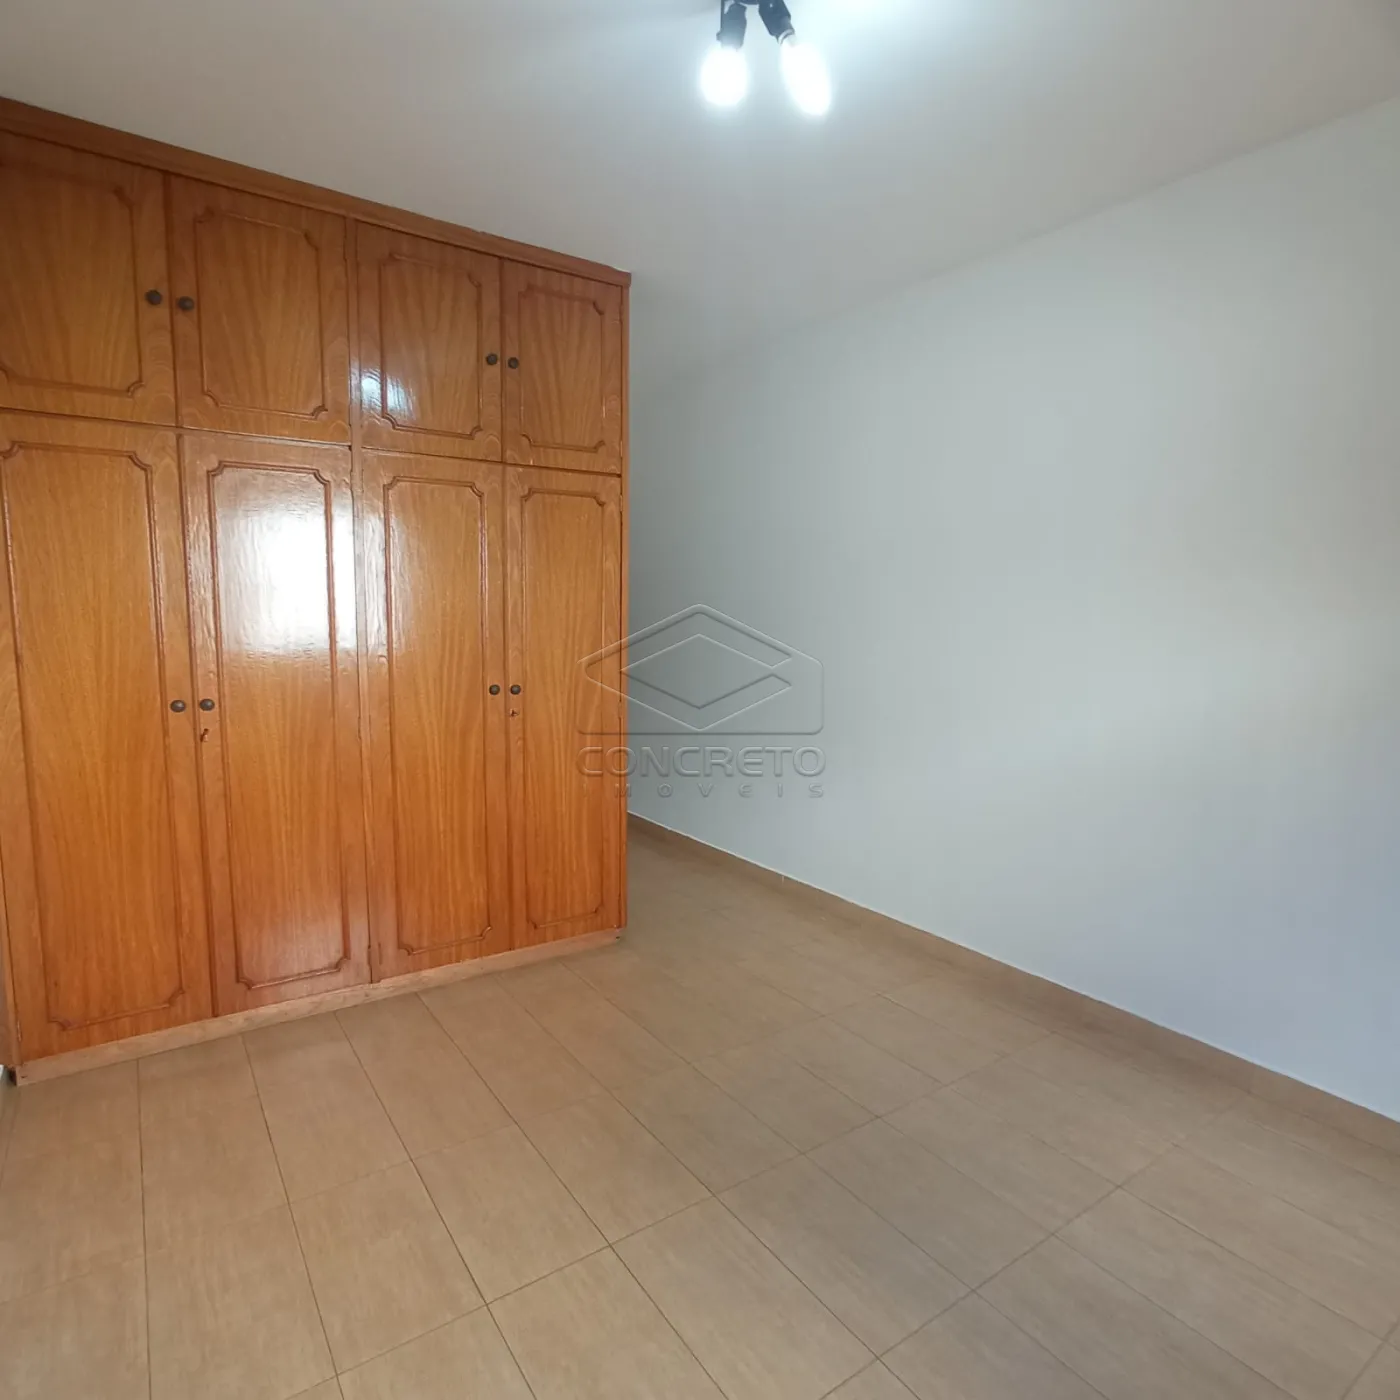 Comprar Casa / Padrão em Bauru R$ 800.000,00 - Foto 6